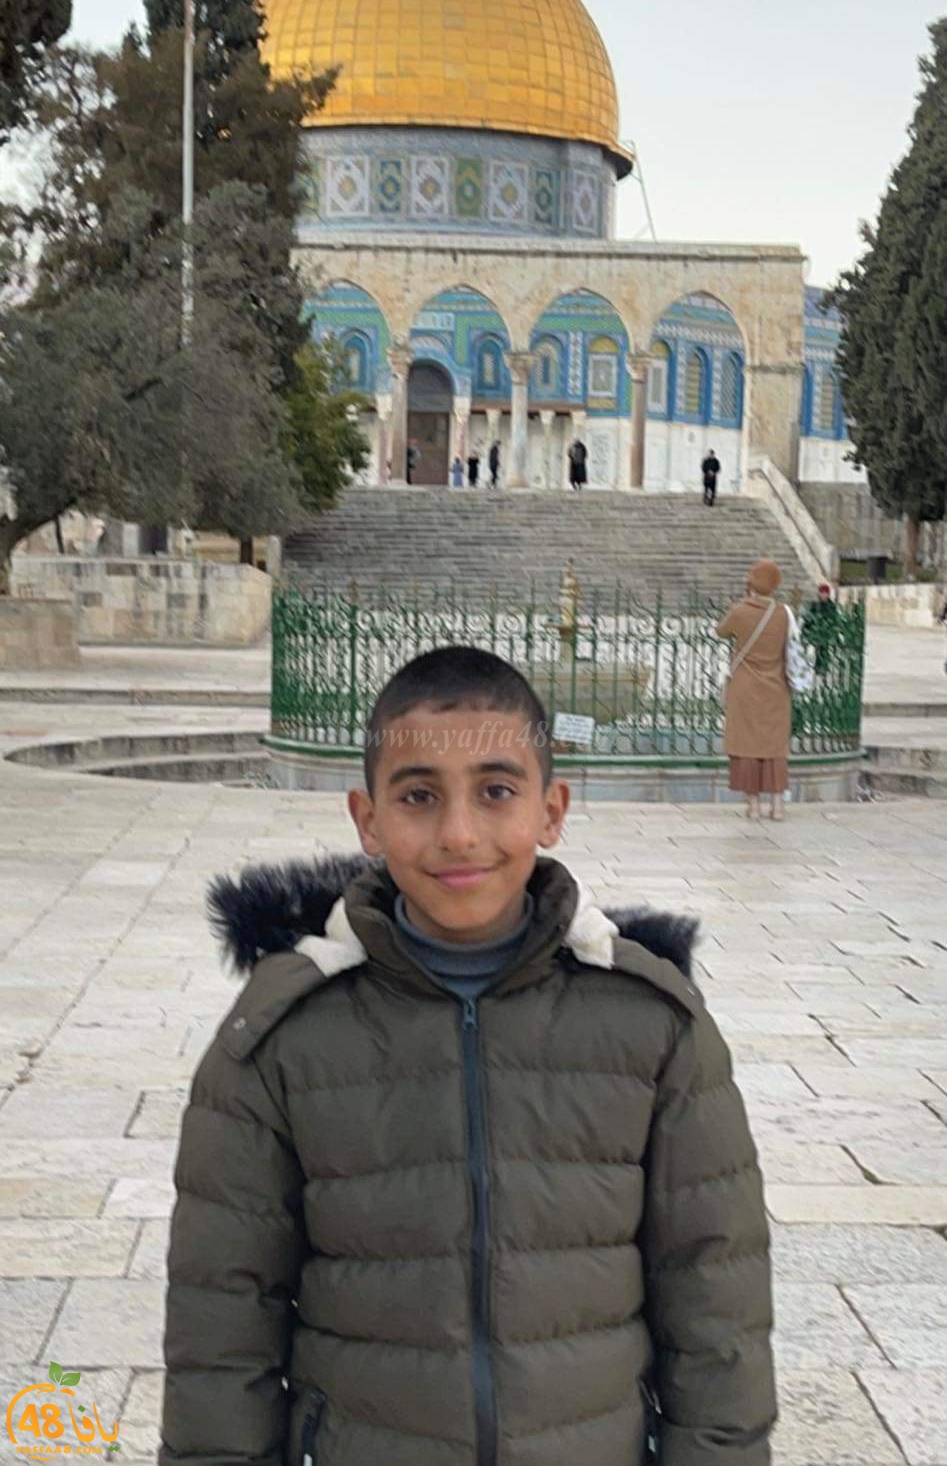 الاعلان عن وفاة الطفل محمد العنيد من سلواد بعد غرقه في بحر يافا